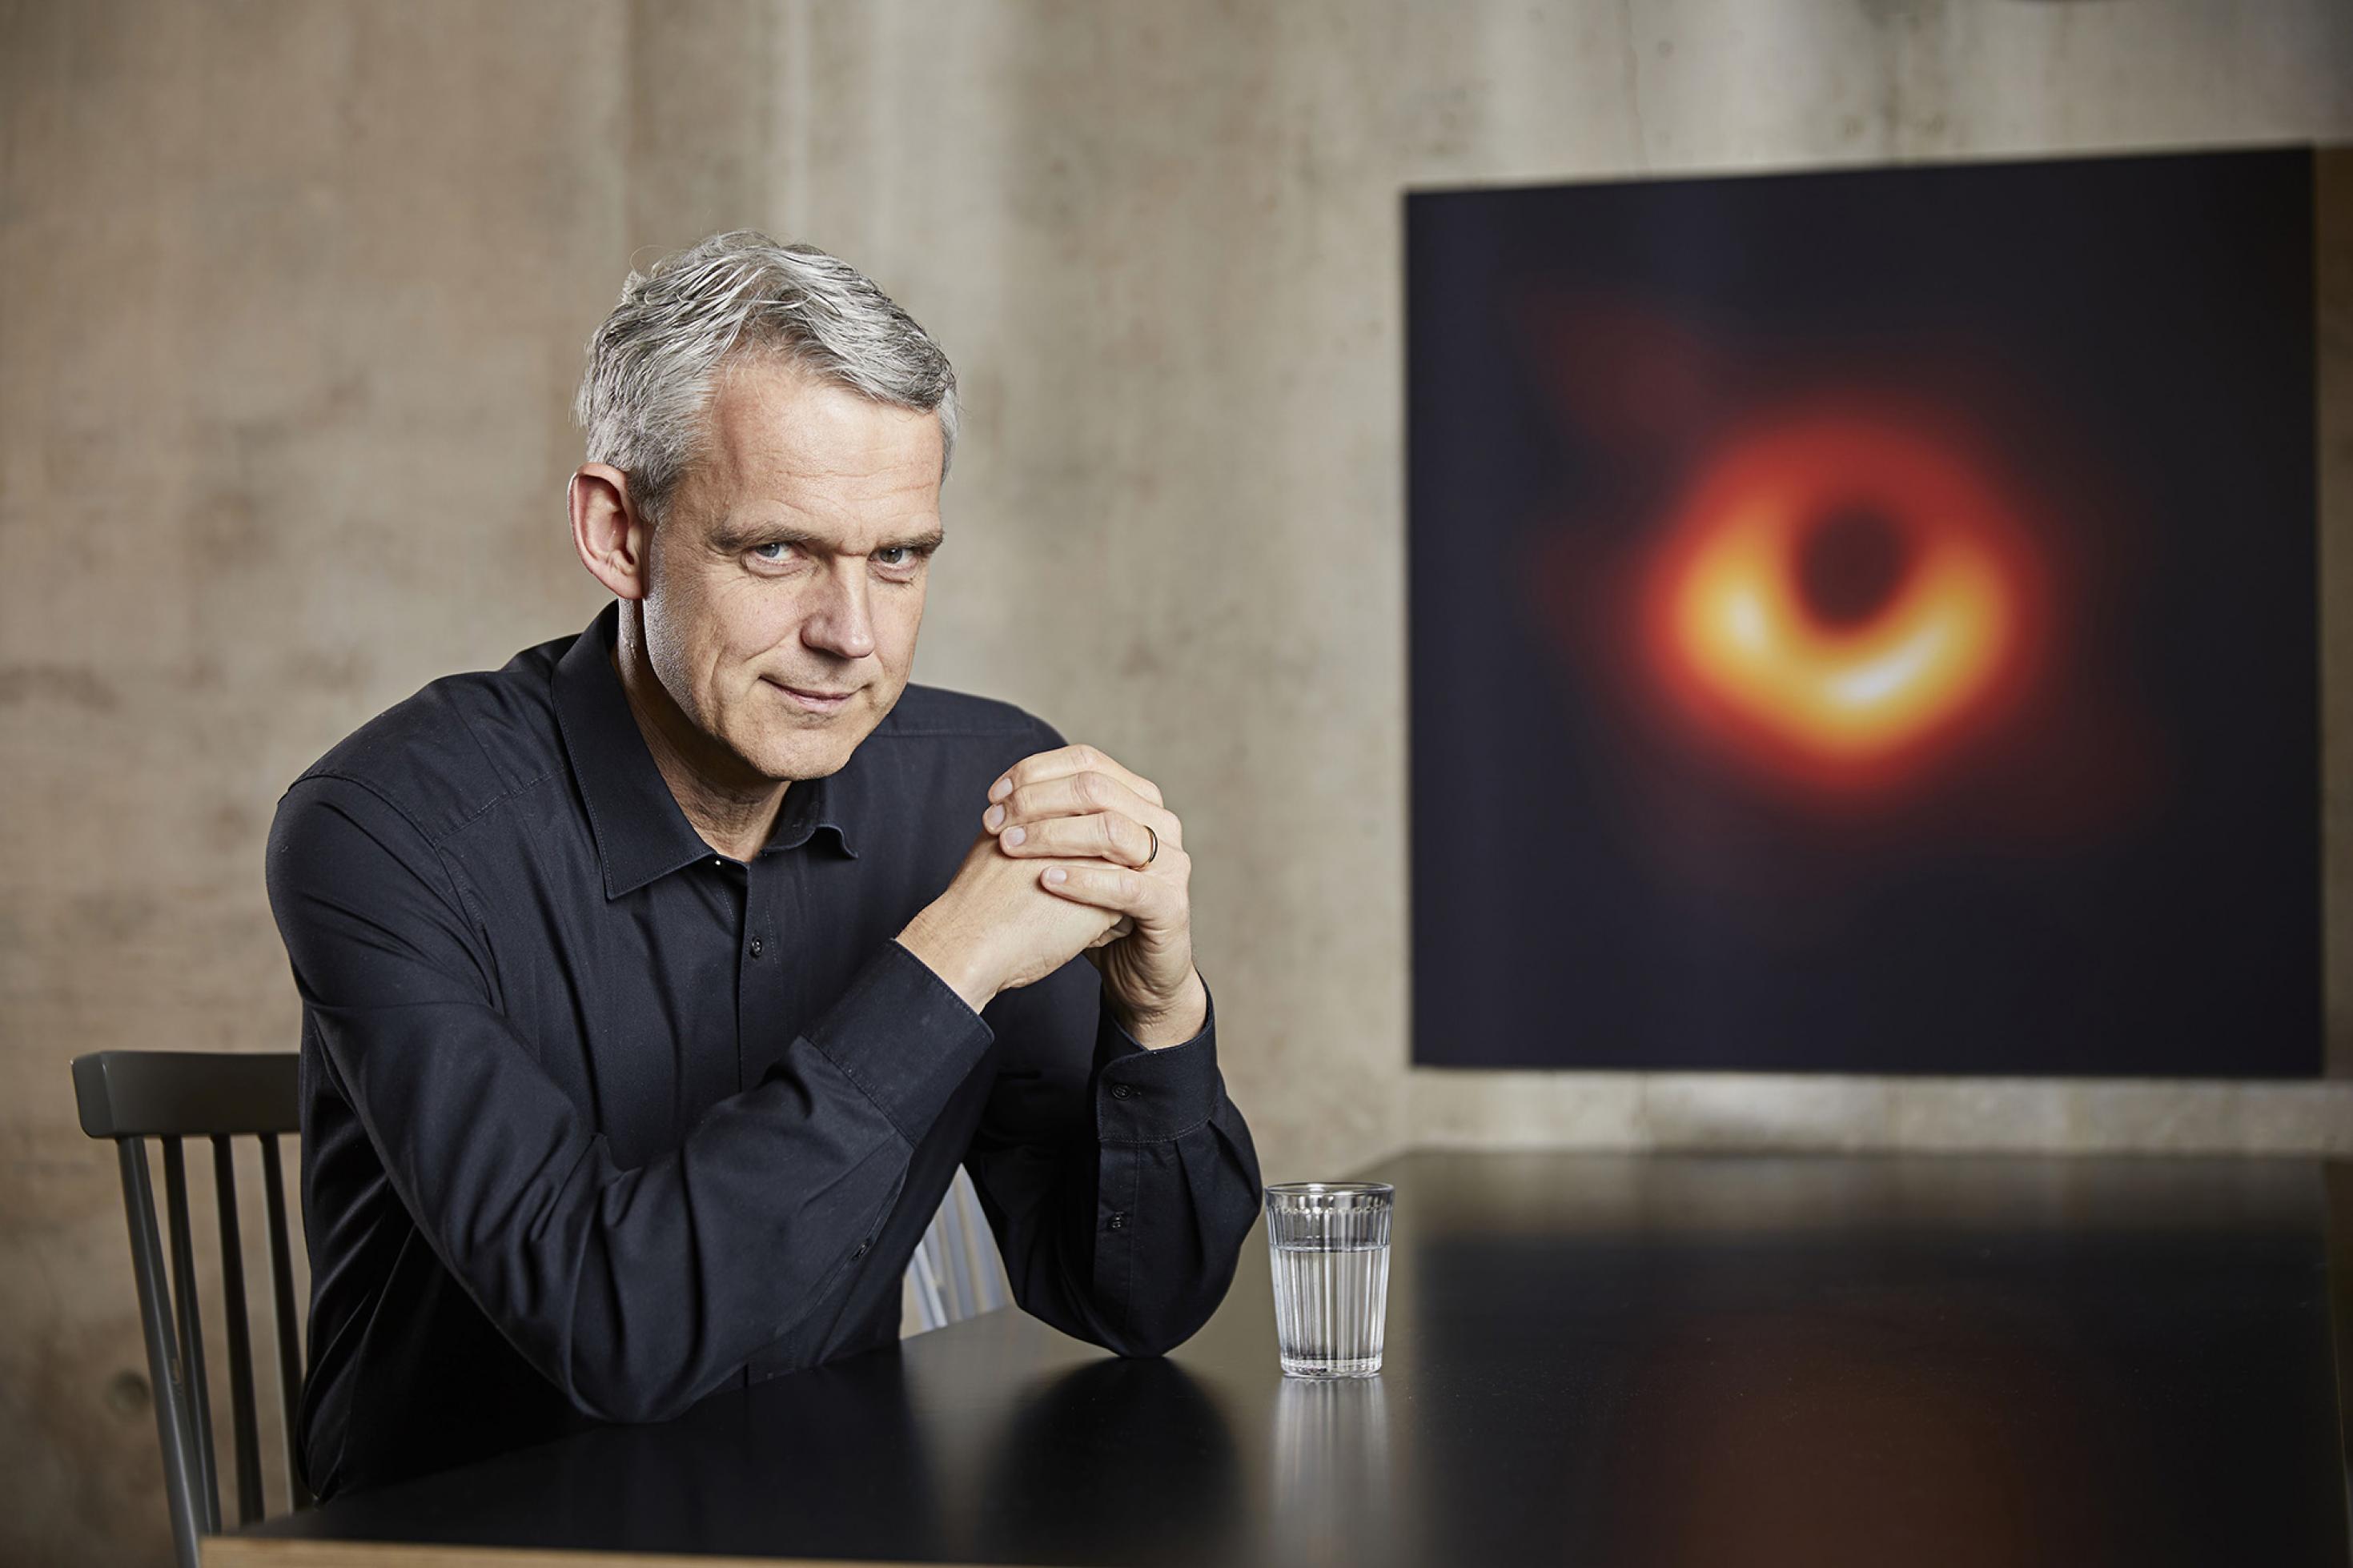 Heino Falcke am Tisch sitzend. Im Hintergrund hängt ein Bild des Schwarzen Lochs M87*, das er und seine Kollegen und Kolleginnen aufgenommen haben.